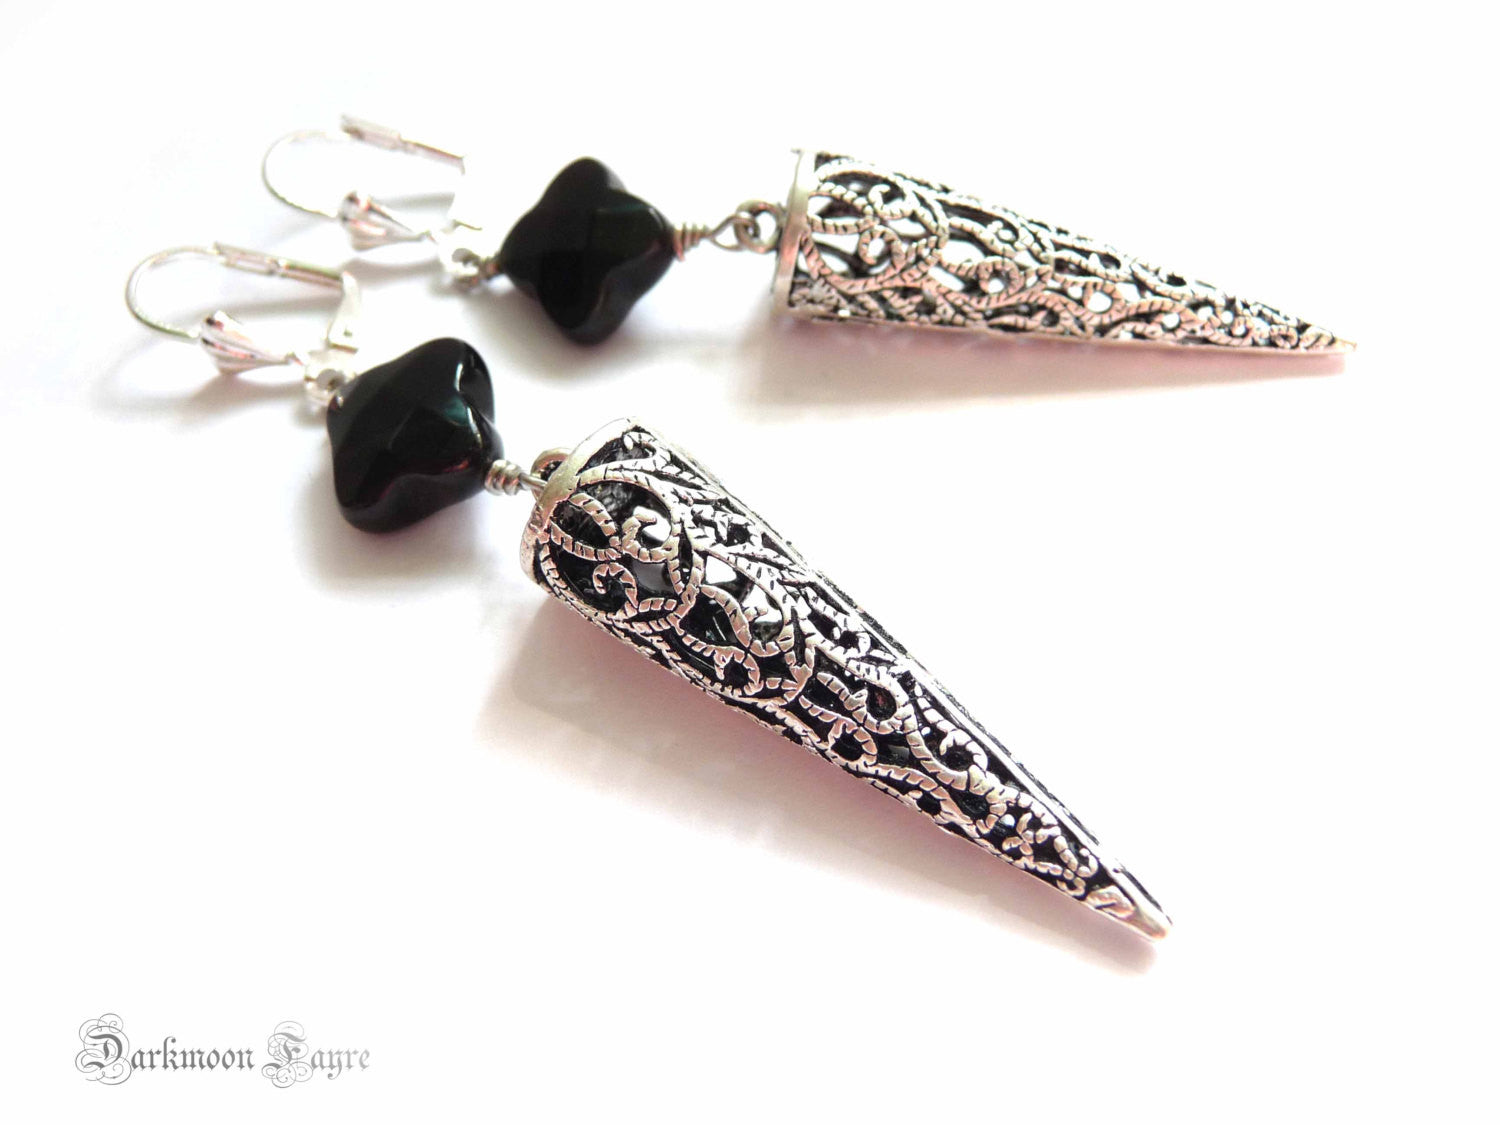 Dragon Glass Earrings. Silver Filigree Pendulum. Black Obsidian. 925 Silver Ear-wire Option - Darkmoon Fayre